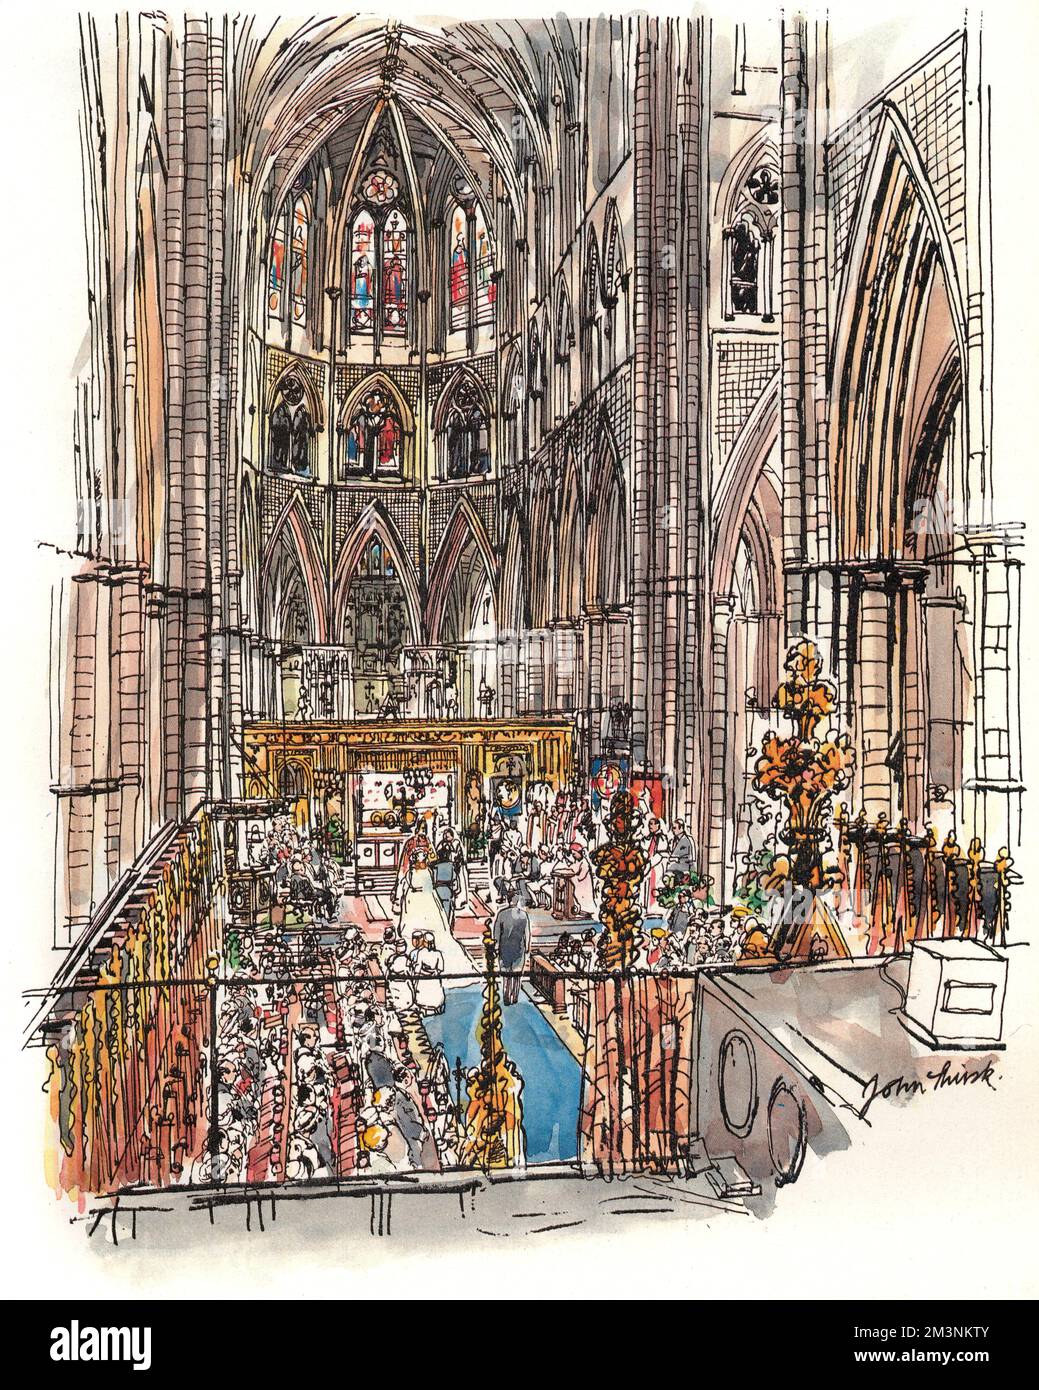 L'impressione dell'artista dell'interno dell'Abbazia di Westminster, luogo preferito per i matrimoni dei reali britannici. Data: 1986 Foto Stock